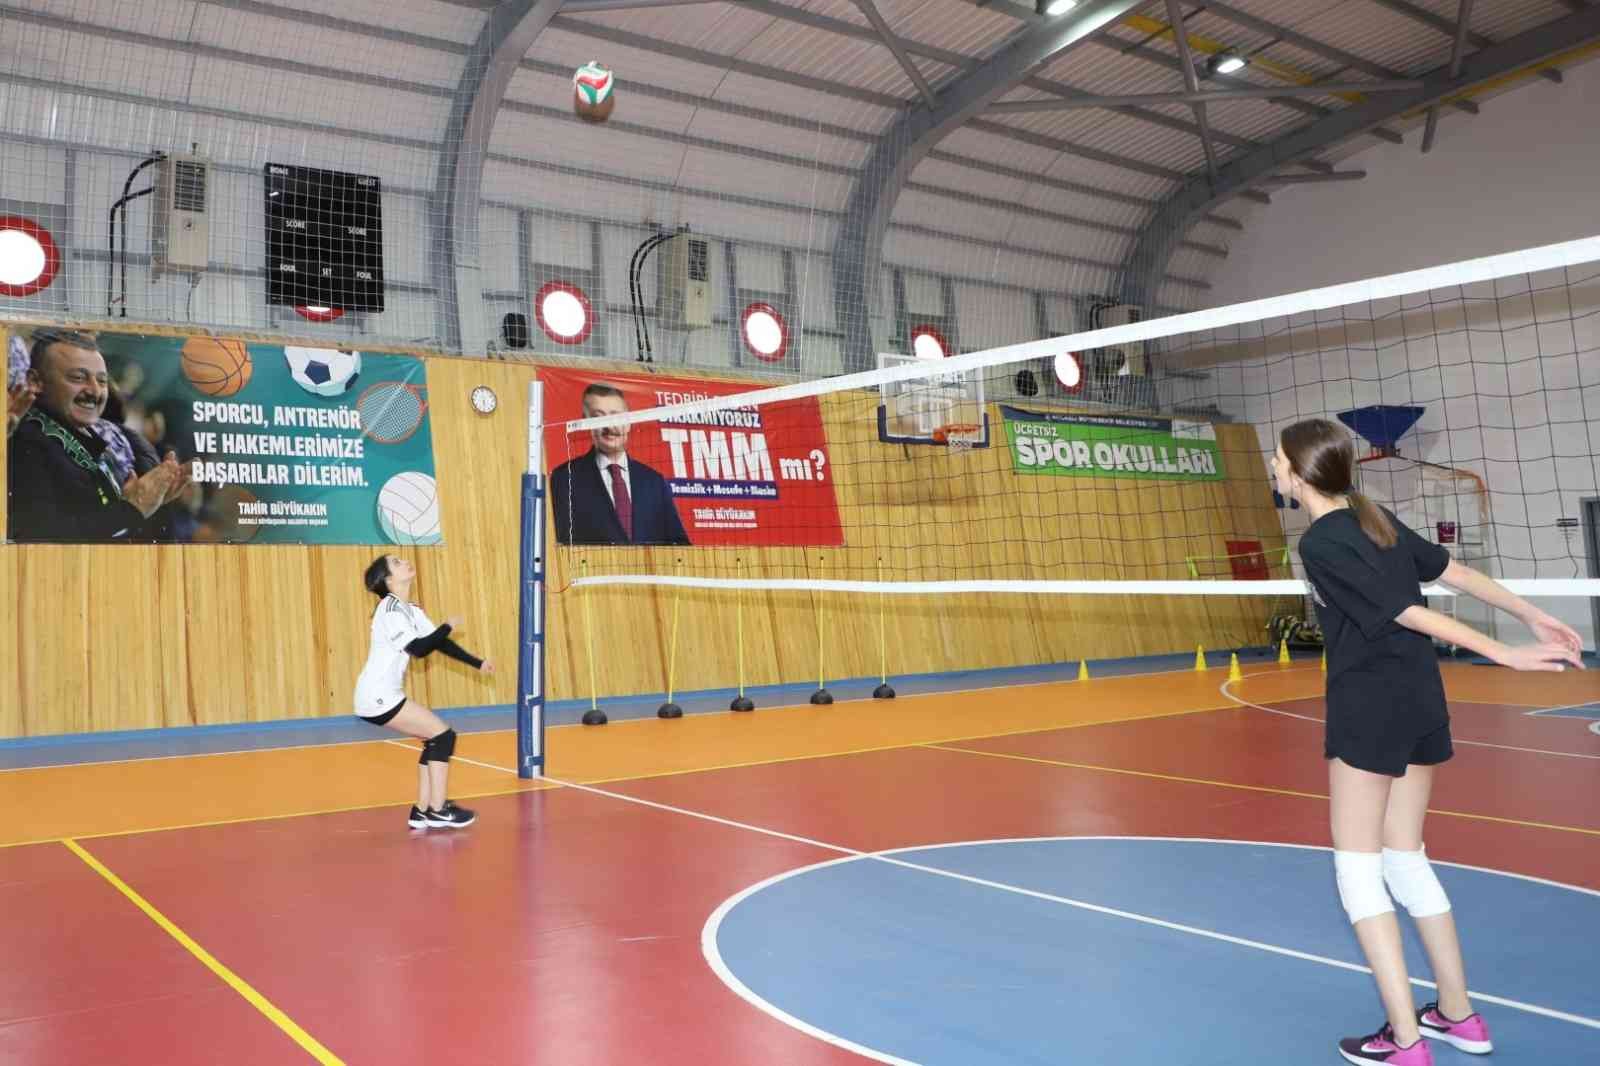 Spor okullarında 24 bin çocuk sporla tanıştı #kocaeli